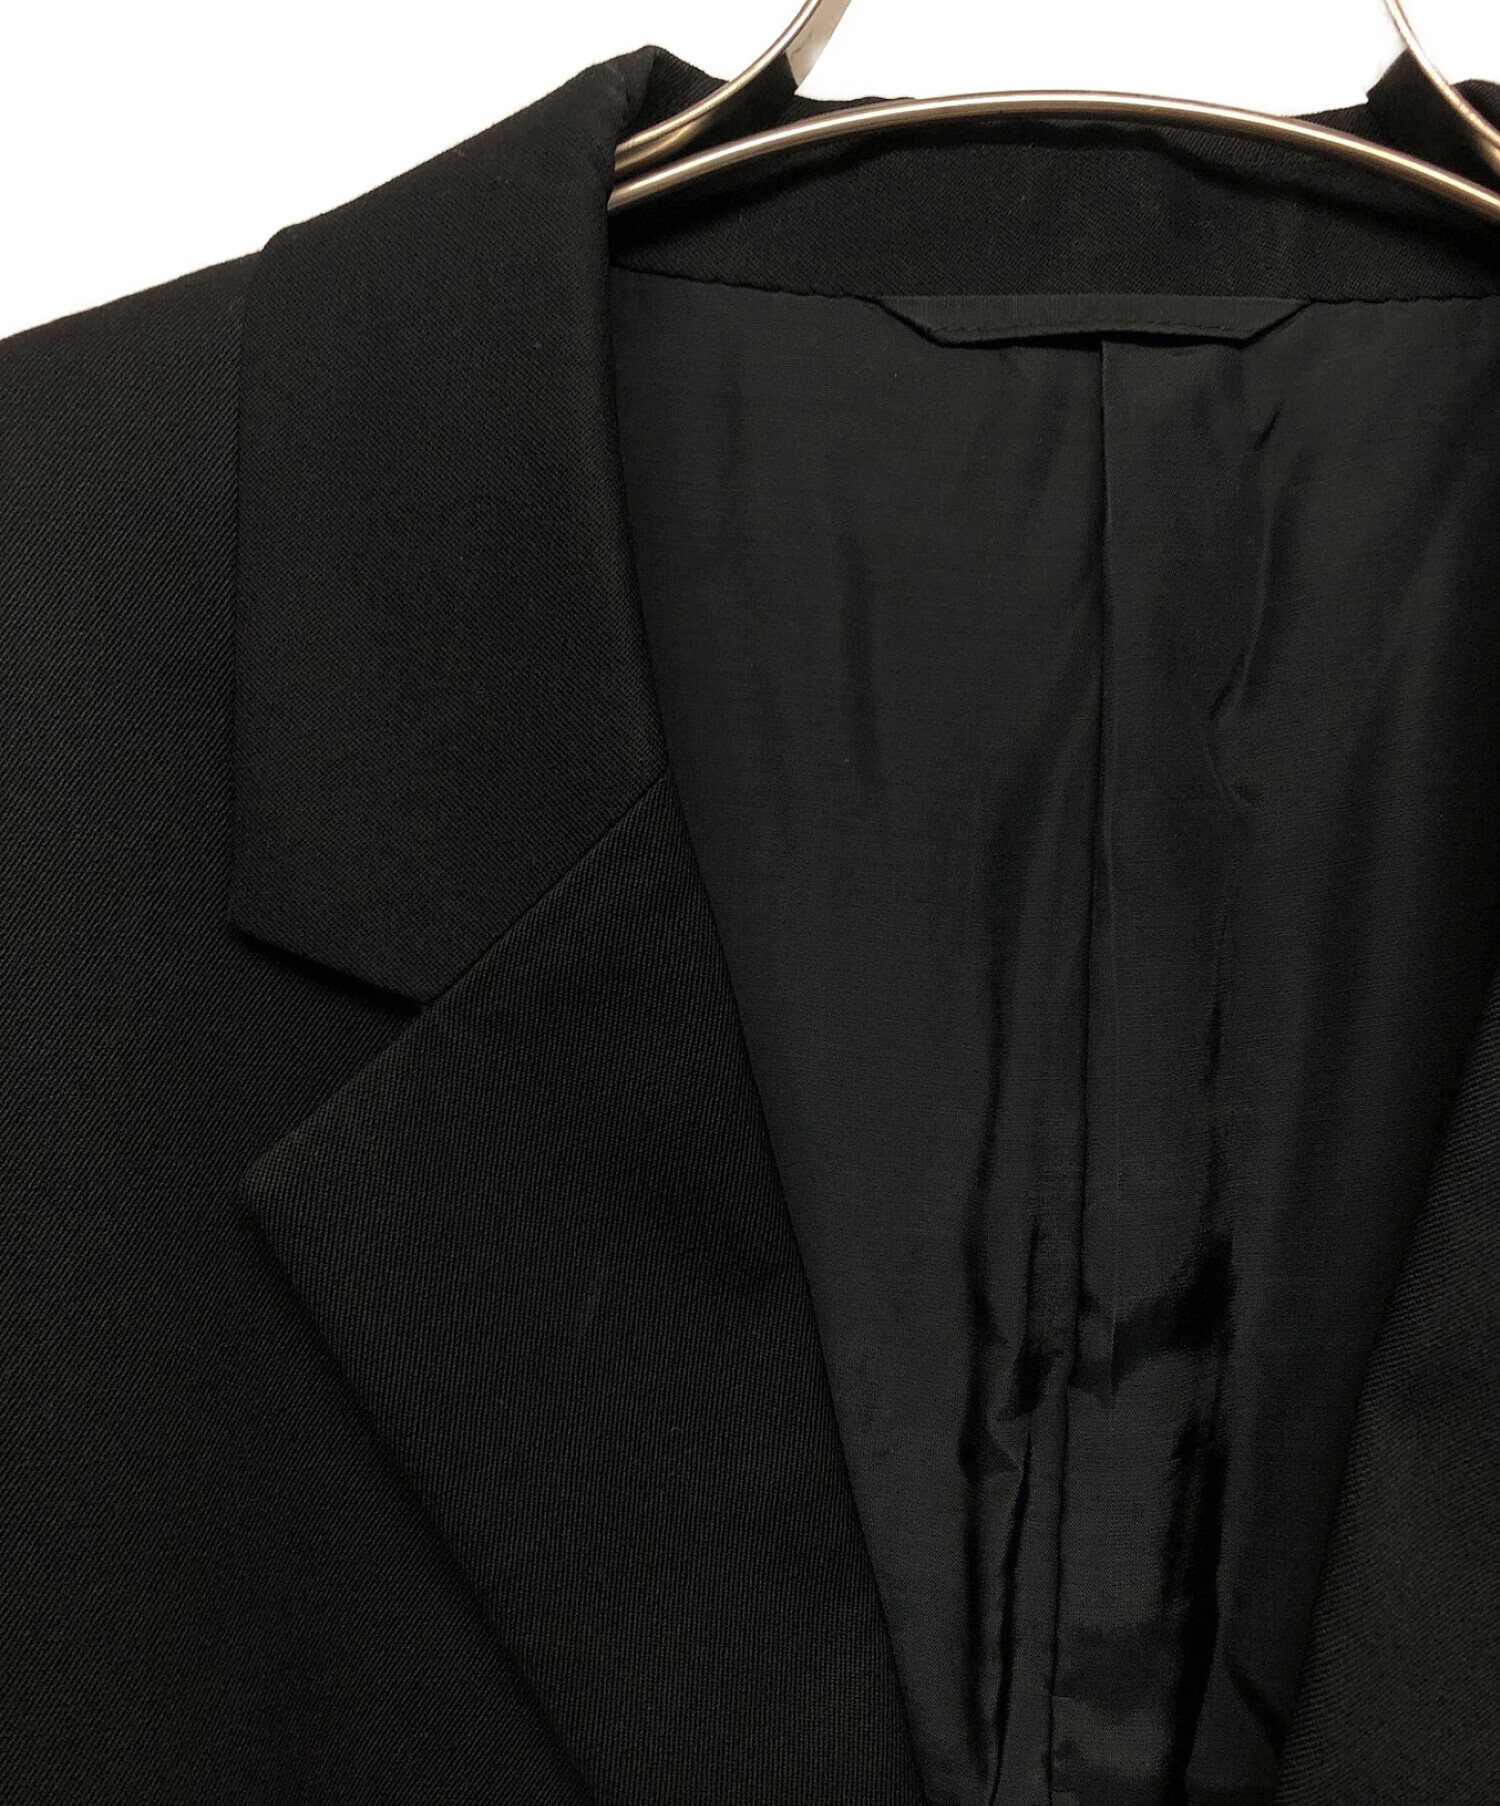 doublet (ダブレット) テーラードジャケット ブラック サイズ:S